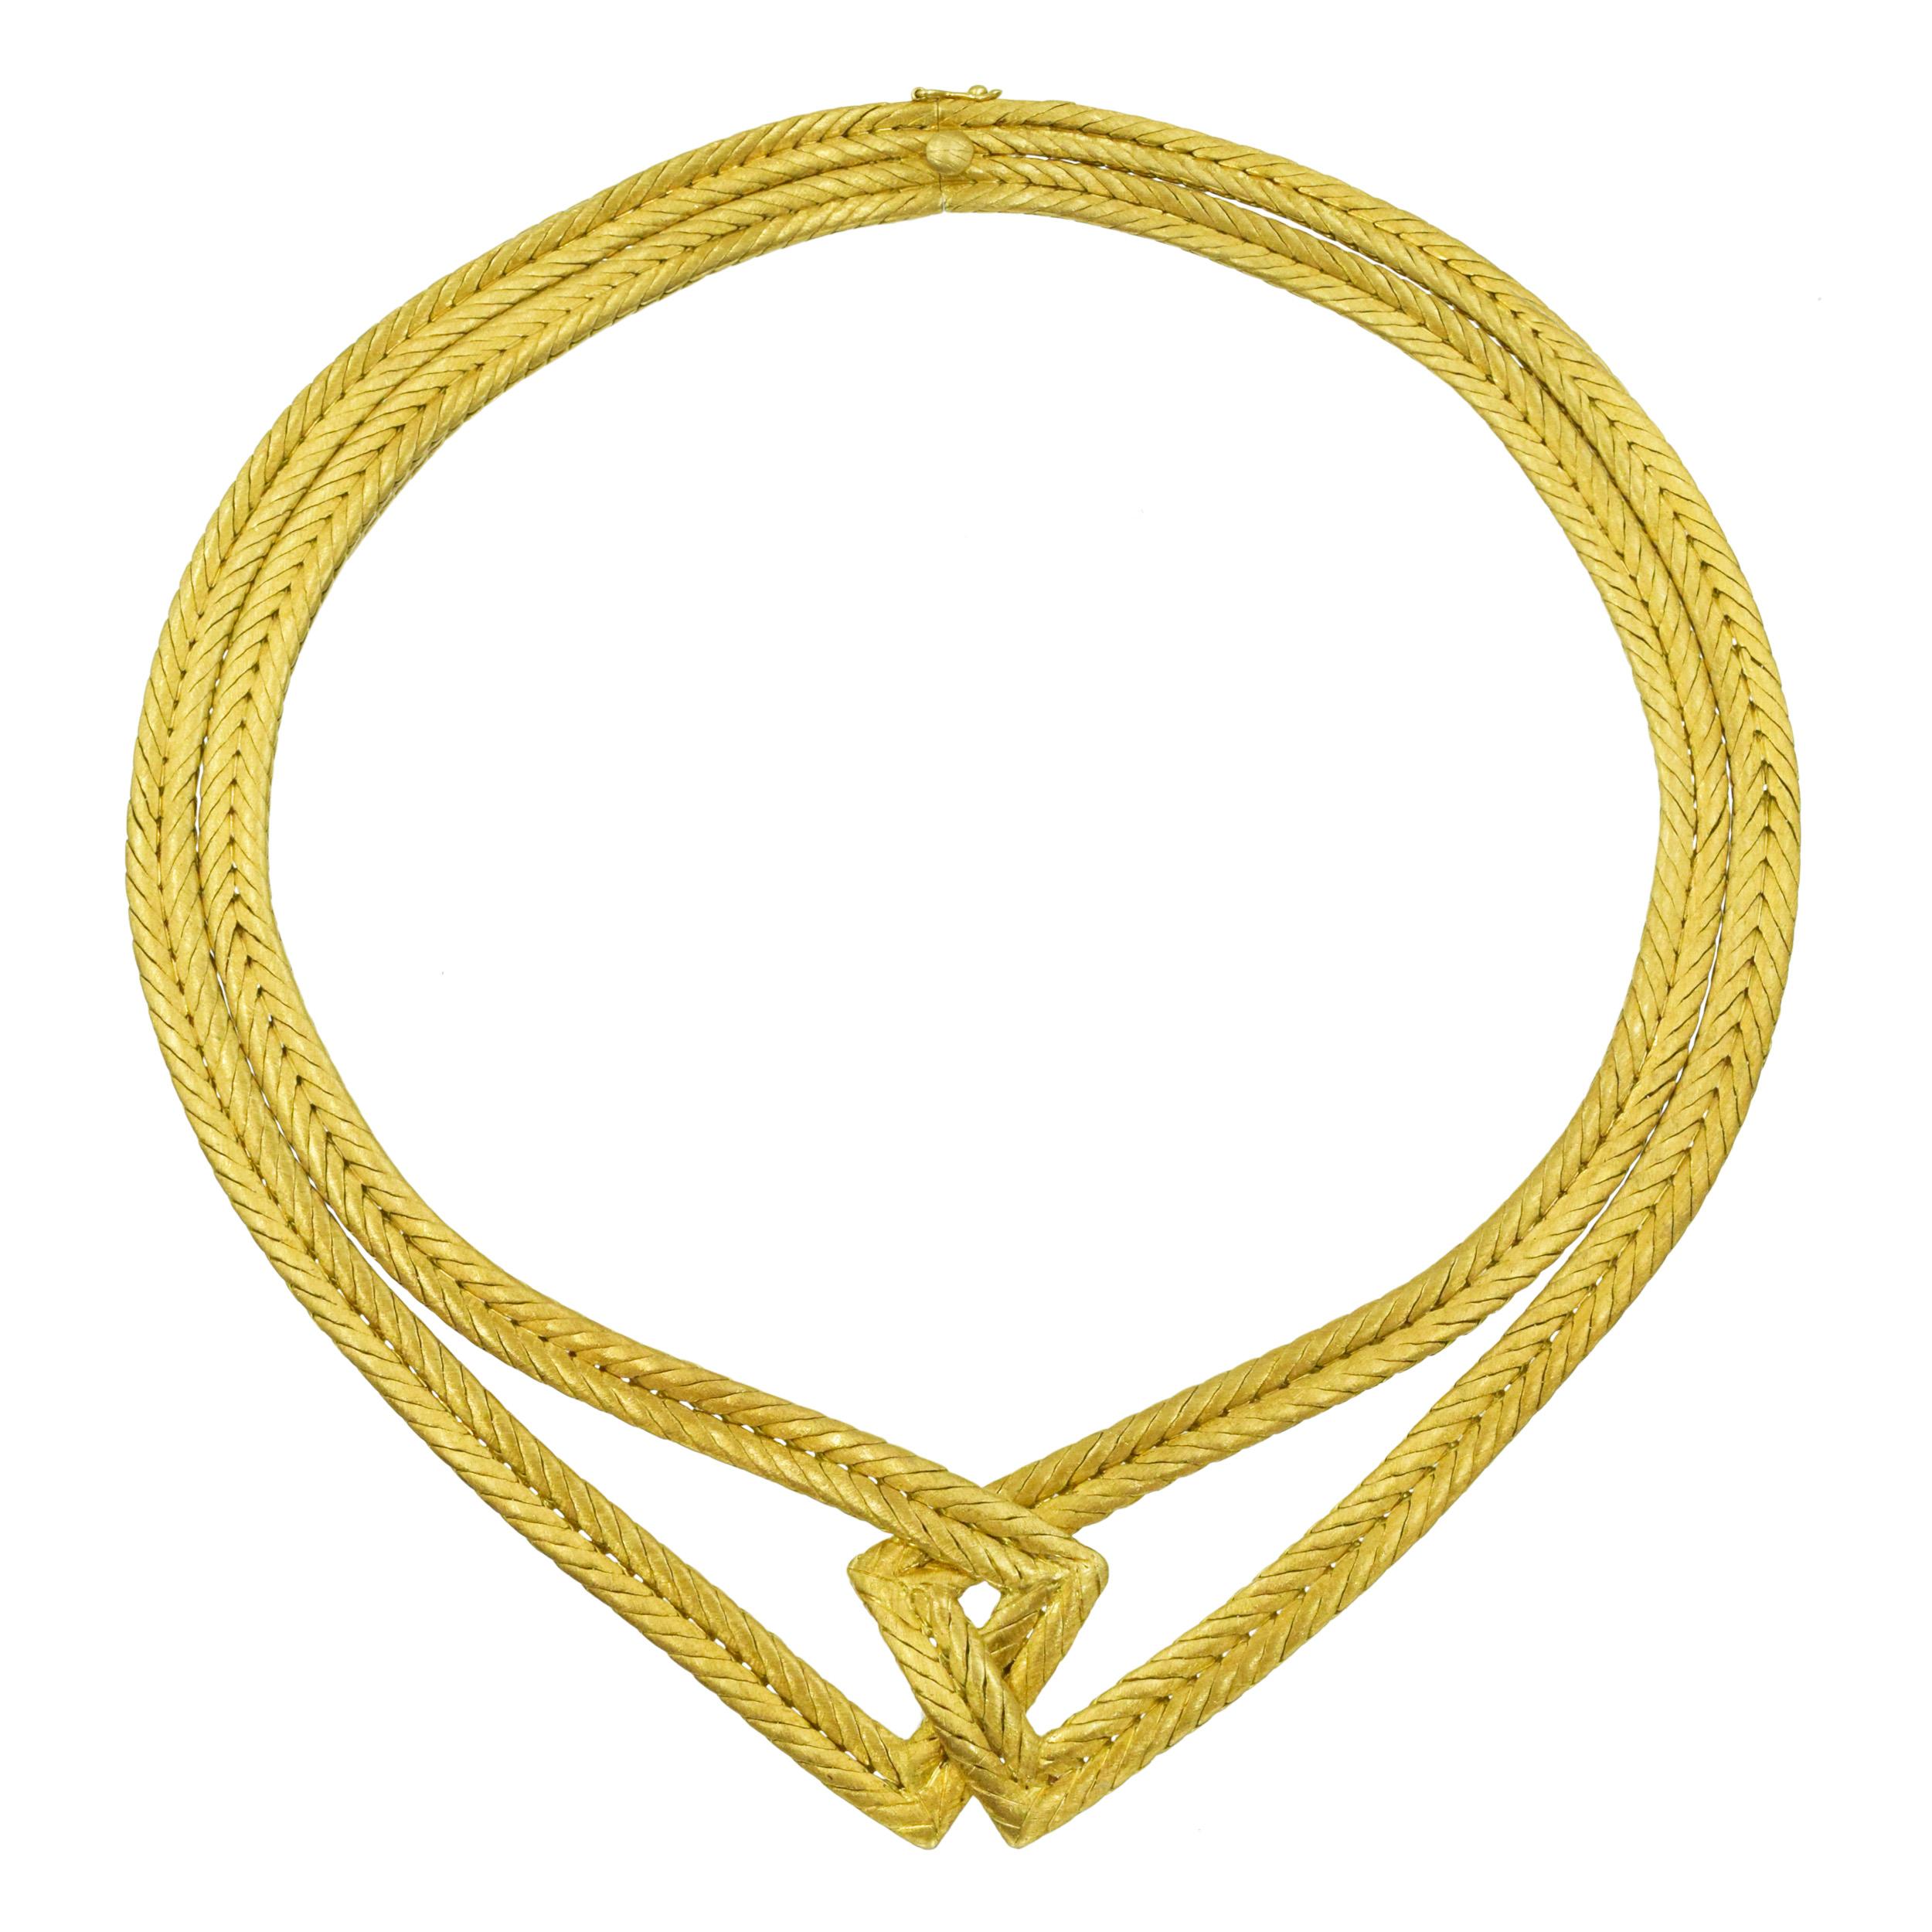 Collier ras de cou tressé en or jaune 18 carats de Buccellati. Le collier se compose de deux brins de design/One imbriqués au centre. Finition or brossé emblématique de Buccellati. Équipé d'un fermoir de boîte et d'une serrure de sécurité